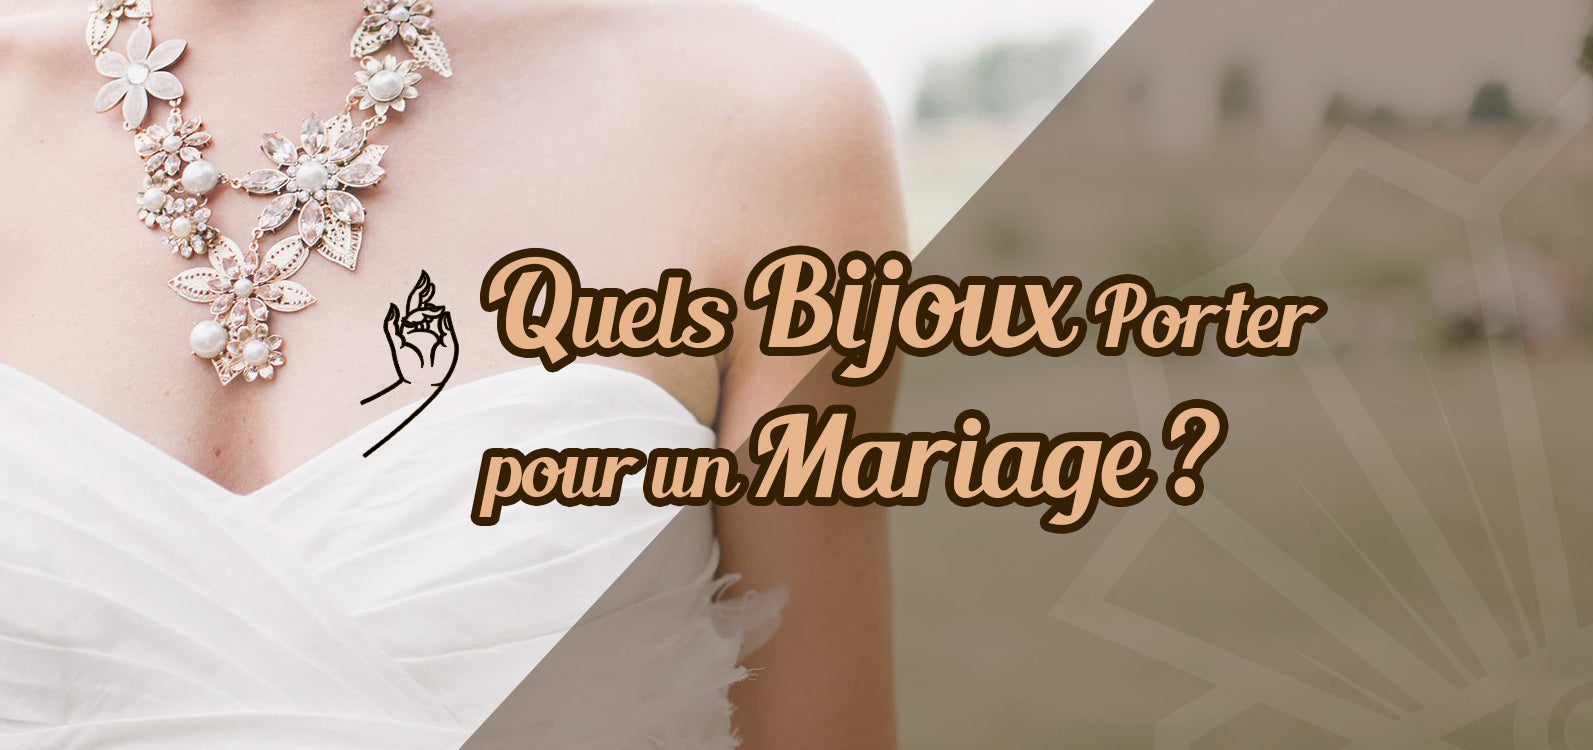 Astuces nettoyage bijou - Conseils Bijoux & Mariage